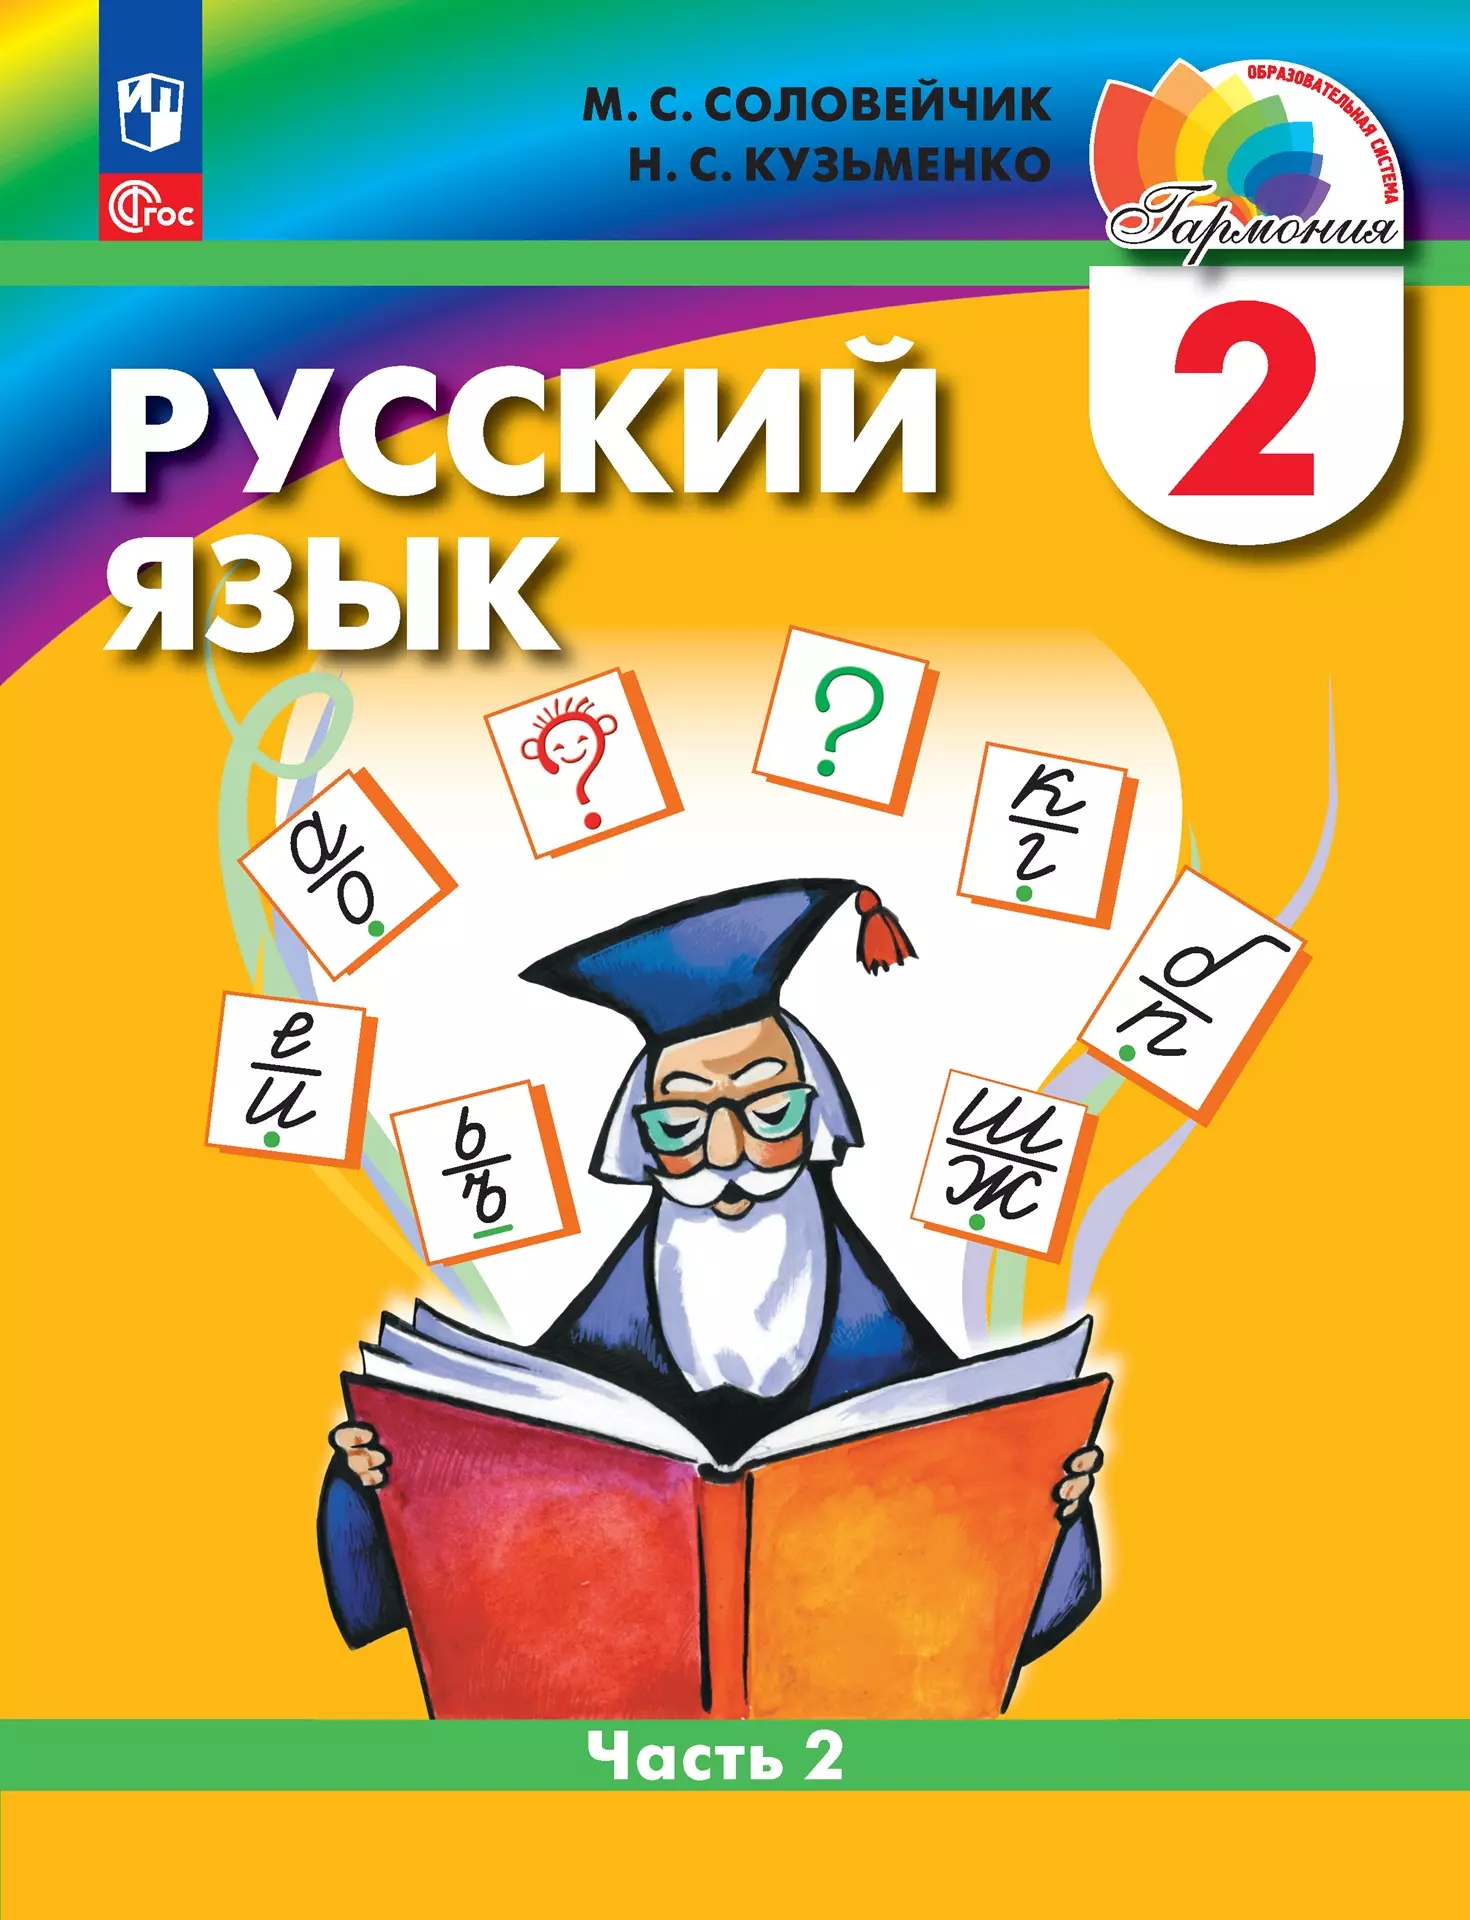 Русский язык: 2 класс: учебное пособие. В 2-х частях. Часть 2